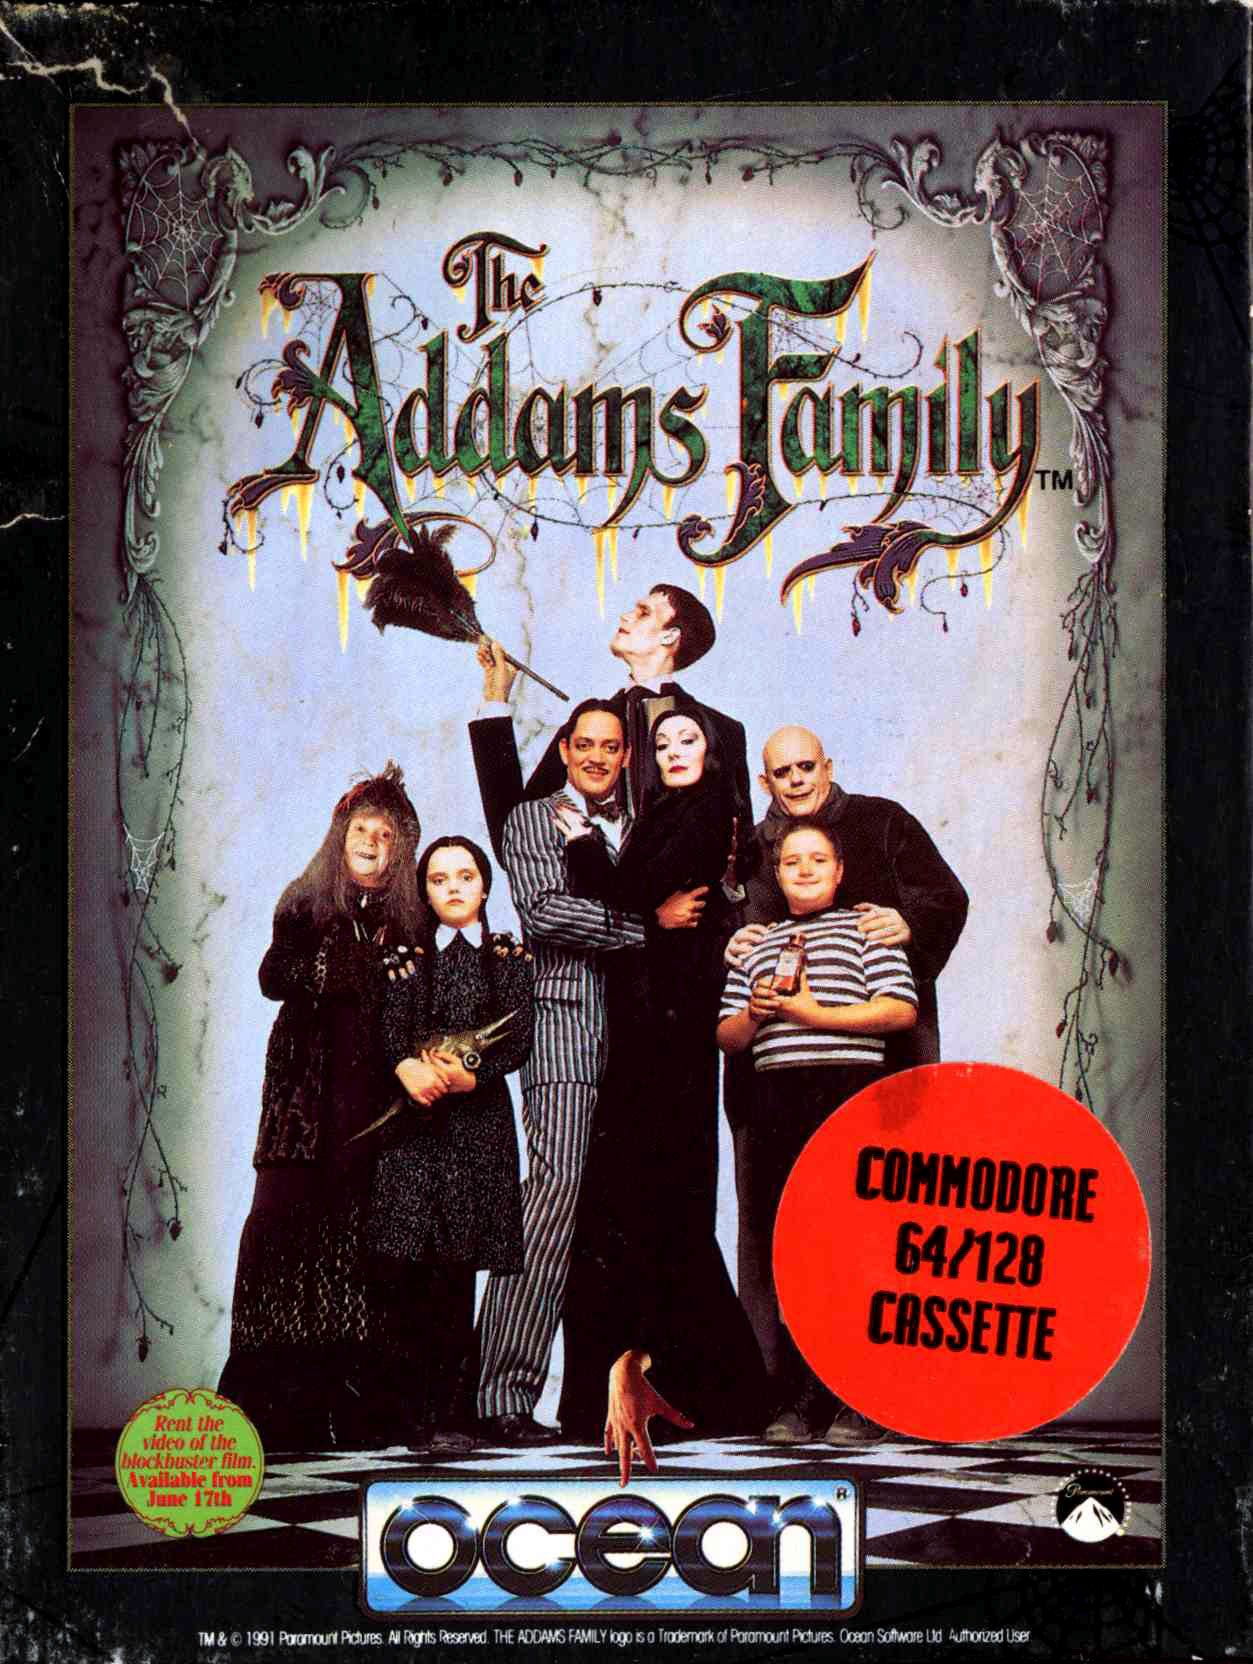 Caratula de Addams Family, The para Commodore 64